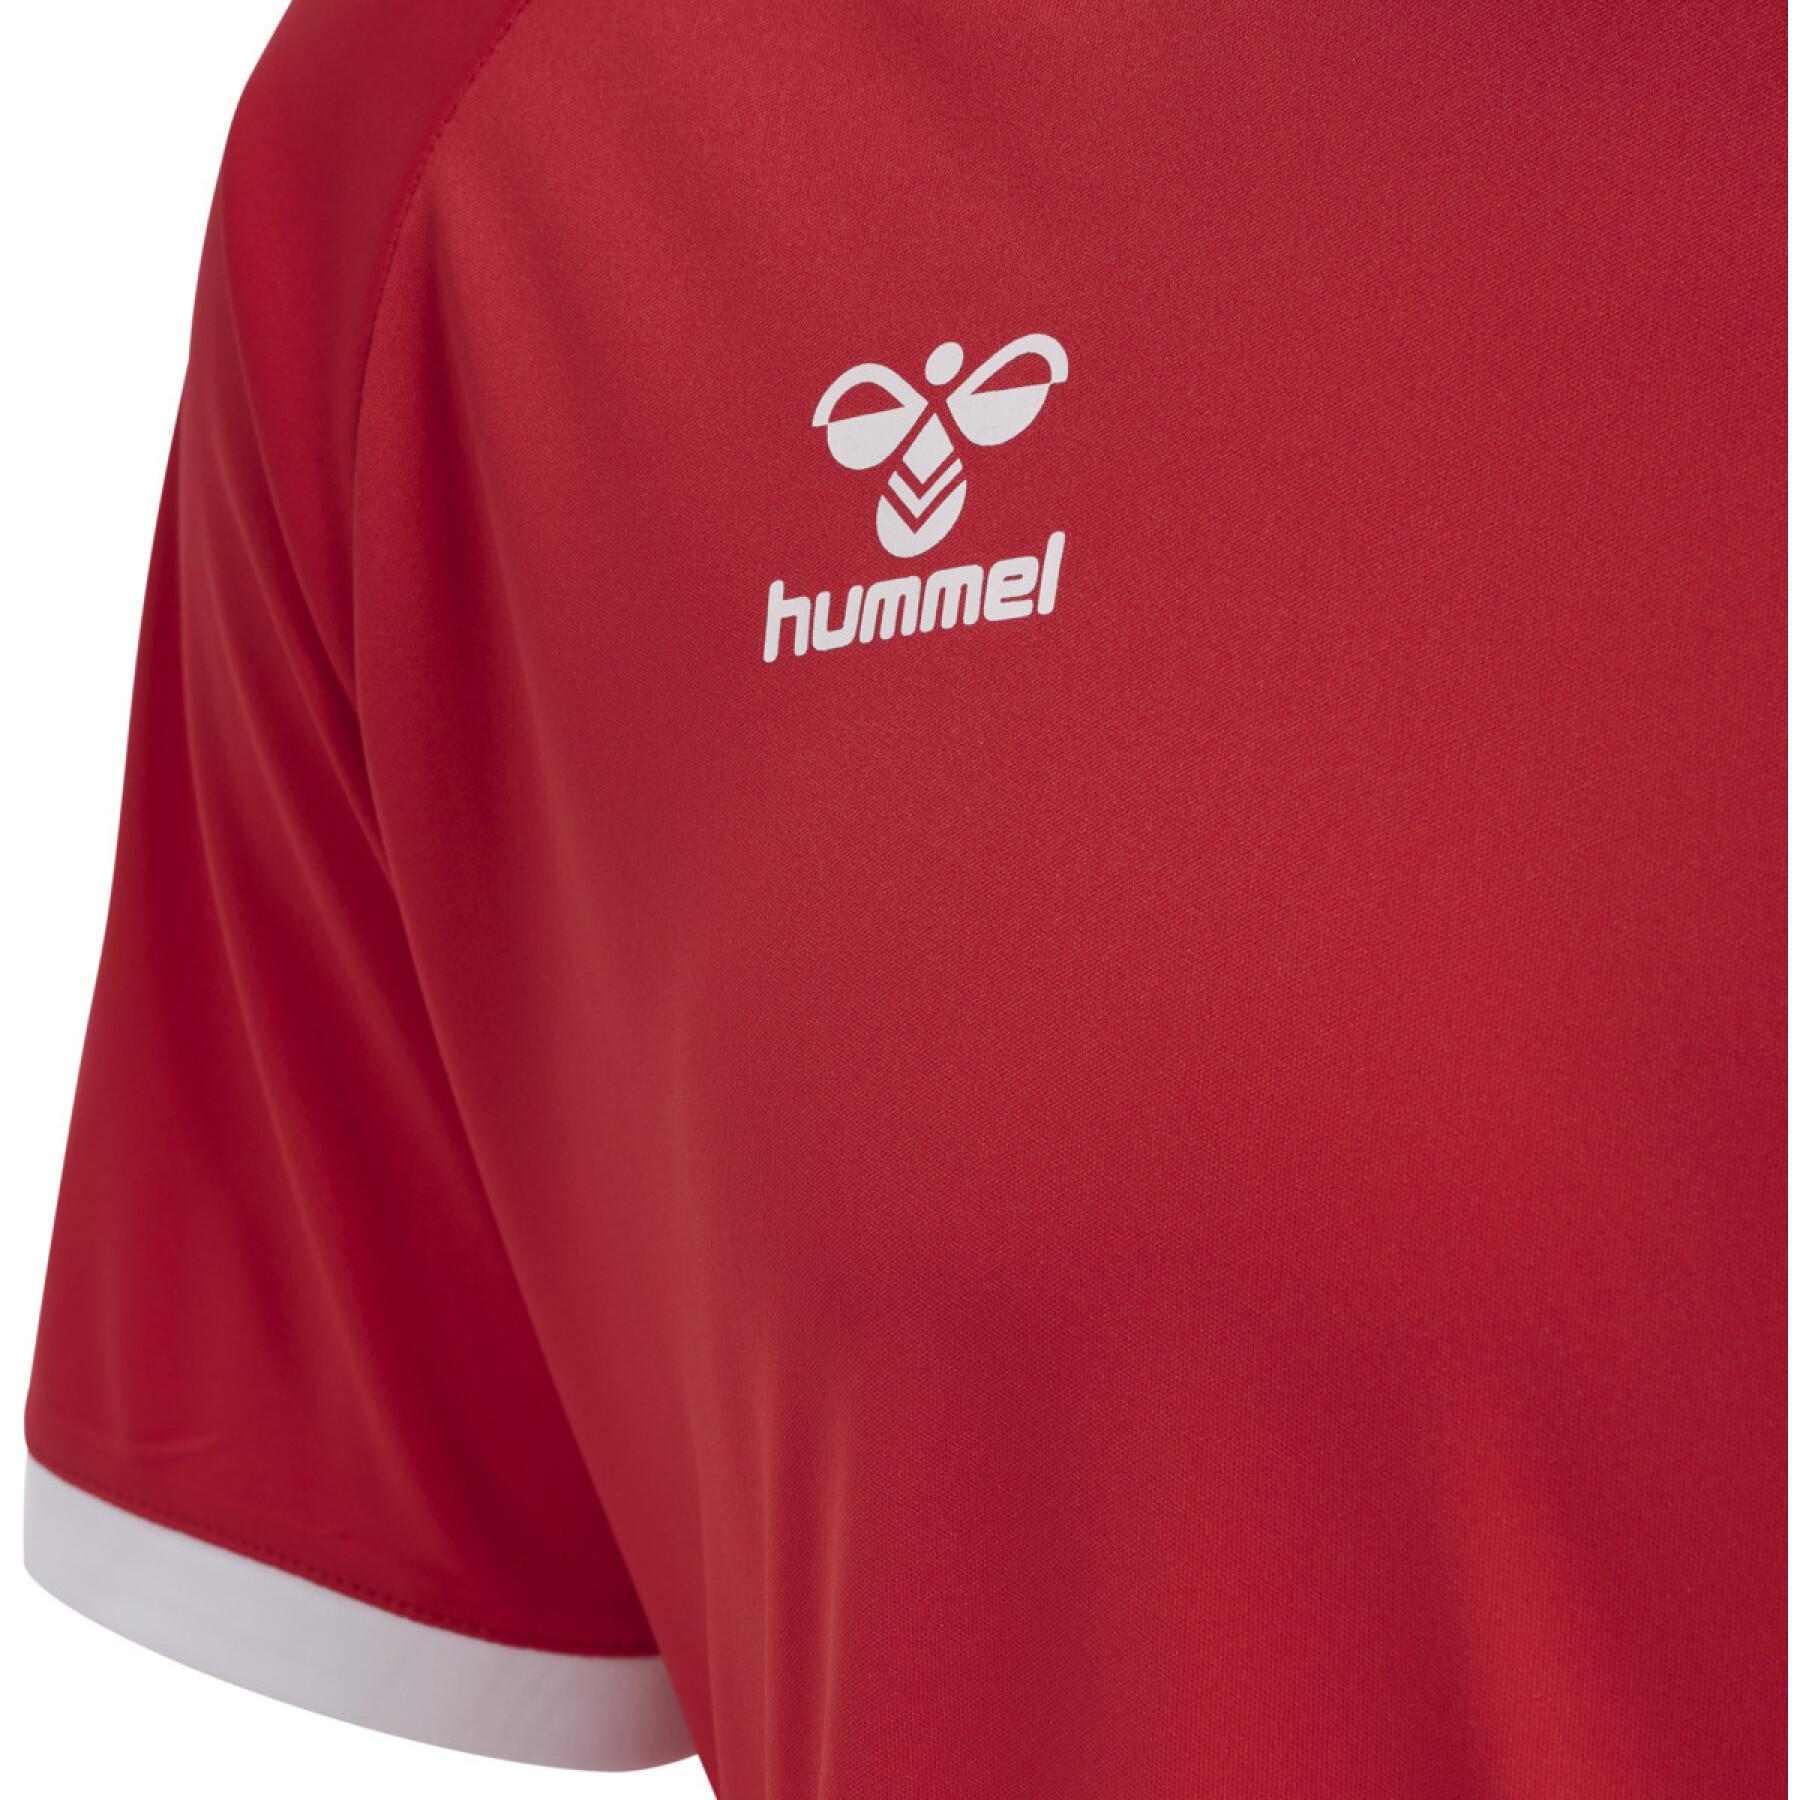 T-shirt Hummel hmlhmlCORE volley